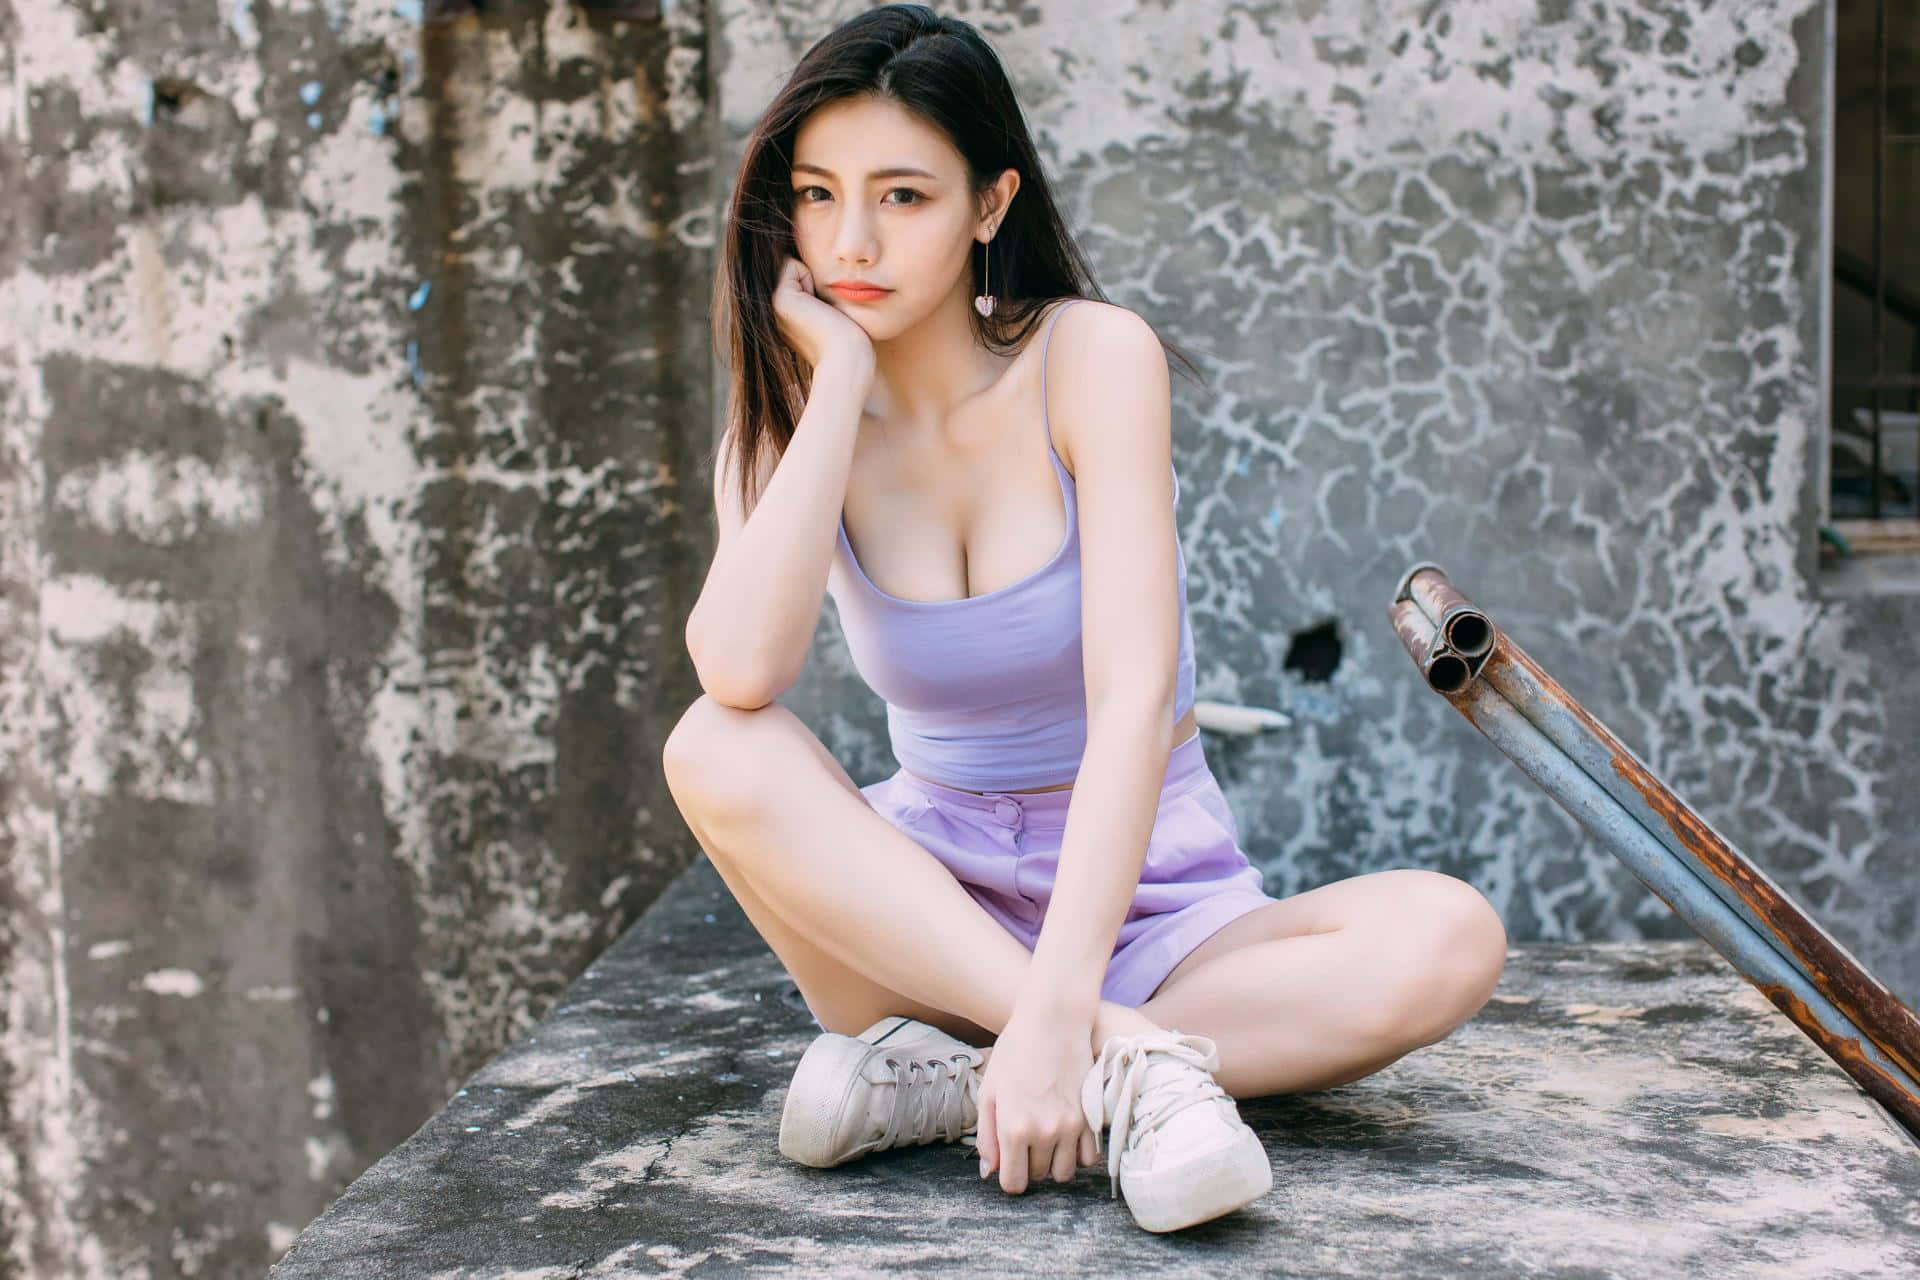 Sød thailandsk pige i lavendelfarvet outfit Wallpaper